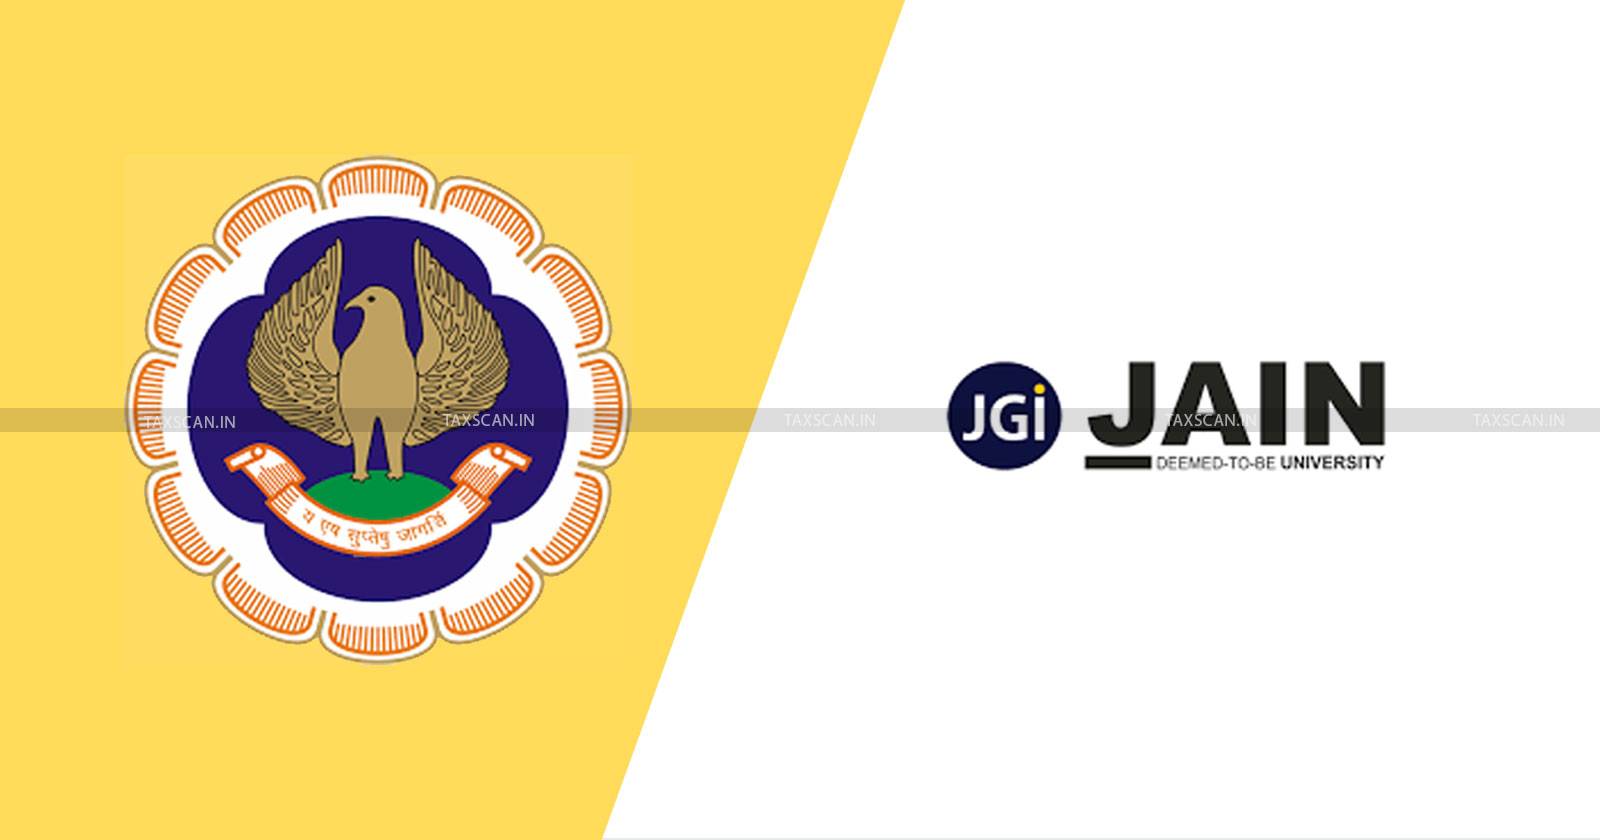 ICAI - JAIN Deemed to be University - ICAI and JAIN collaboration - Academic Enhancement - taxscan